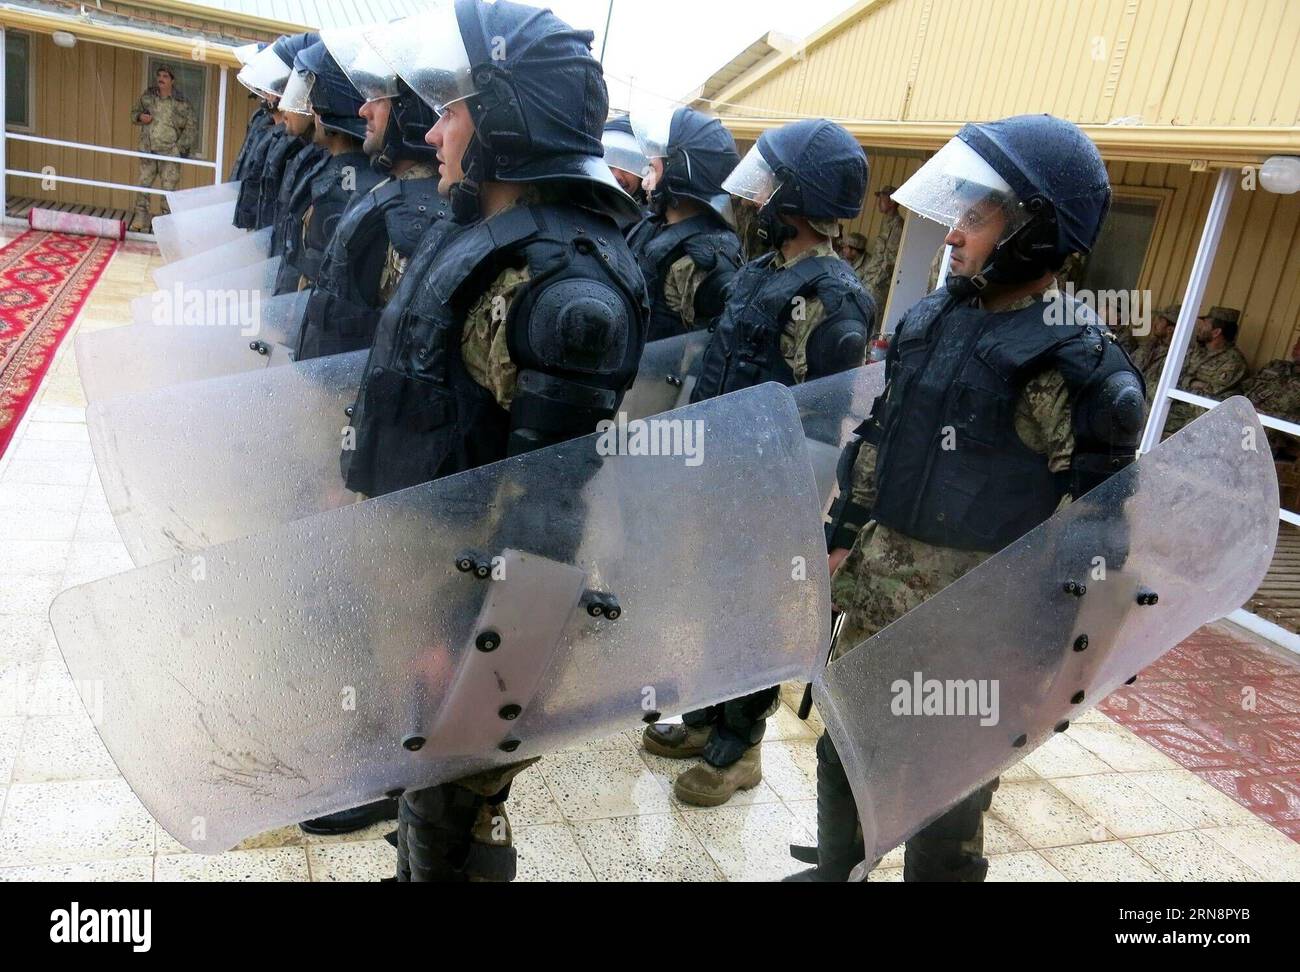 (151102) - BALKH, 2 novembre 2015 - i poliziotti afghani partecipano a un'esercitazione militare a Mazar-e-Sharif, capitale della provincia settentrionale di Balkh, Afghanistan, 2 novembre 2015. Le autorità afghane hanno recentemente accelerato la formazione delle forze di sicurezza, dal 1° gennaio di quest'anno la polizia e l'esercito del paese hanno assunto tutte le accuse di sicurezza dalle forze NATO e statunitensi. ) AFGHANISTAN-BALKH-FORMAZIONE DI POLIZIA Azorda PUBLICATIONxNOTxINxCHN Balkh 2 novembre 2015 poliziotti afghani partecipano a un'ESERCITAZIONE militare a Mazar e Sharif capitale della provincia settentrionale di Balkh in Afghanistan 2 novembre 2015 autorità afghane h Foto Stock